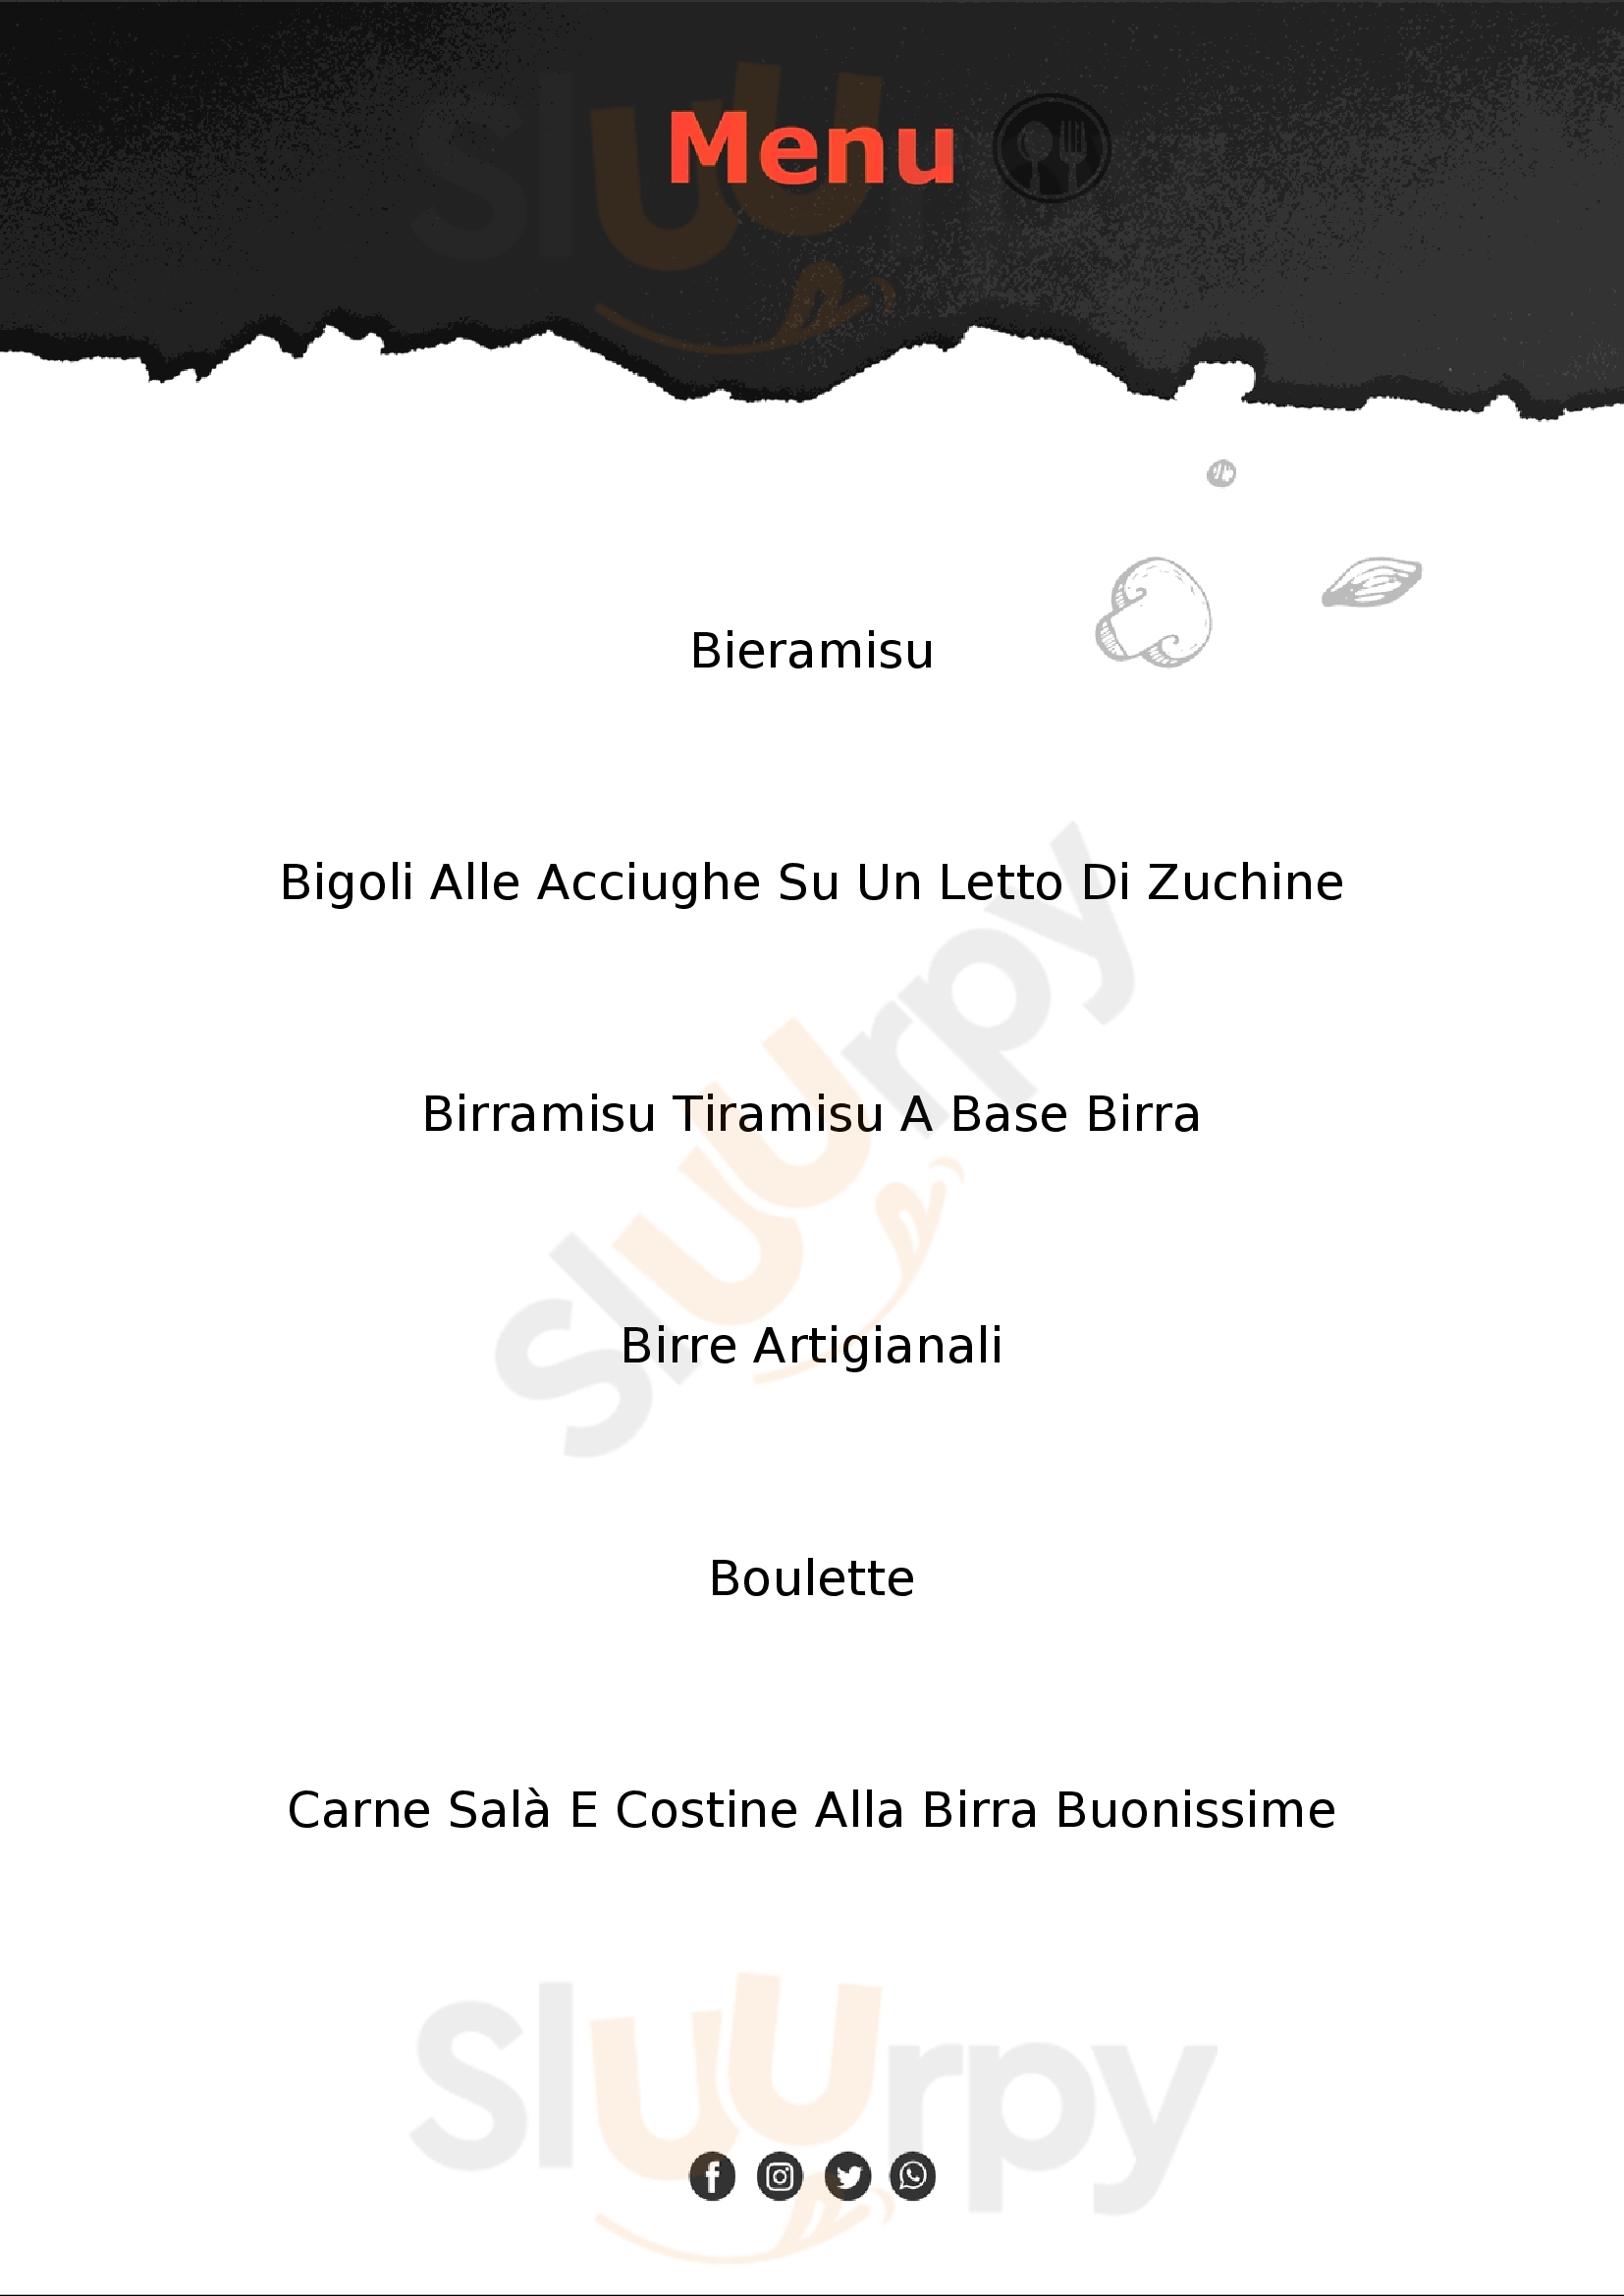 Birra Amaldi Birreria all'italiana Lazise menù 1 pagina